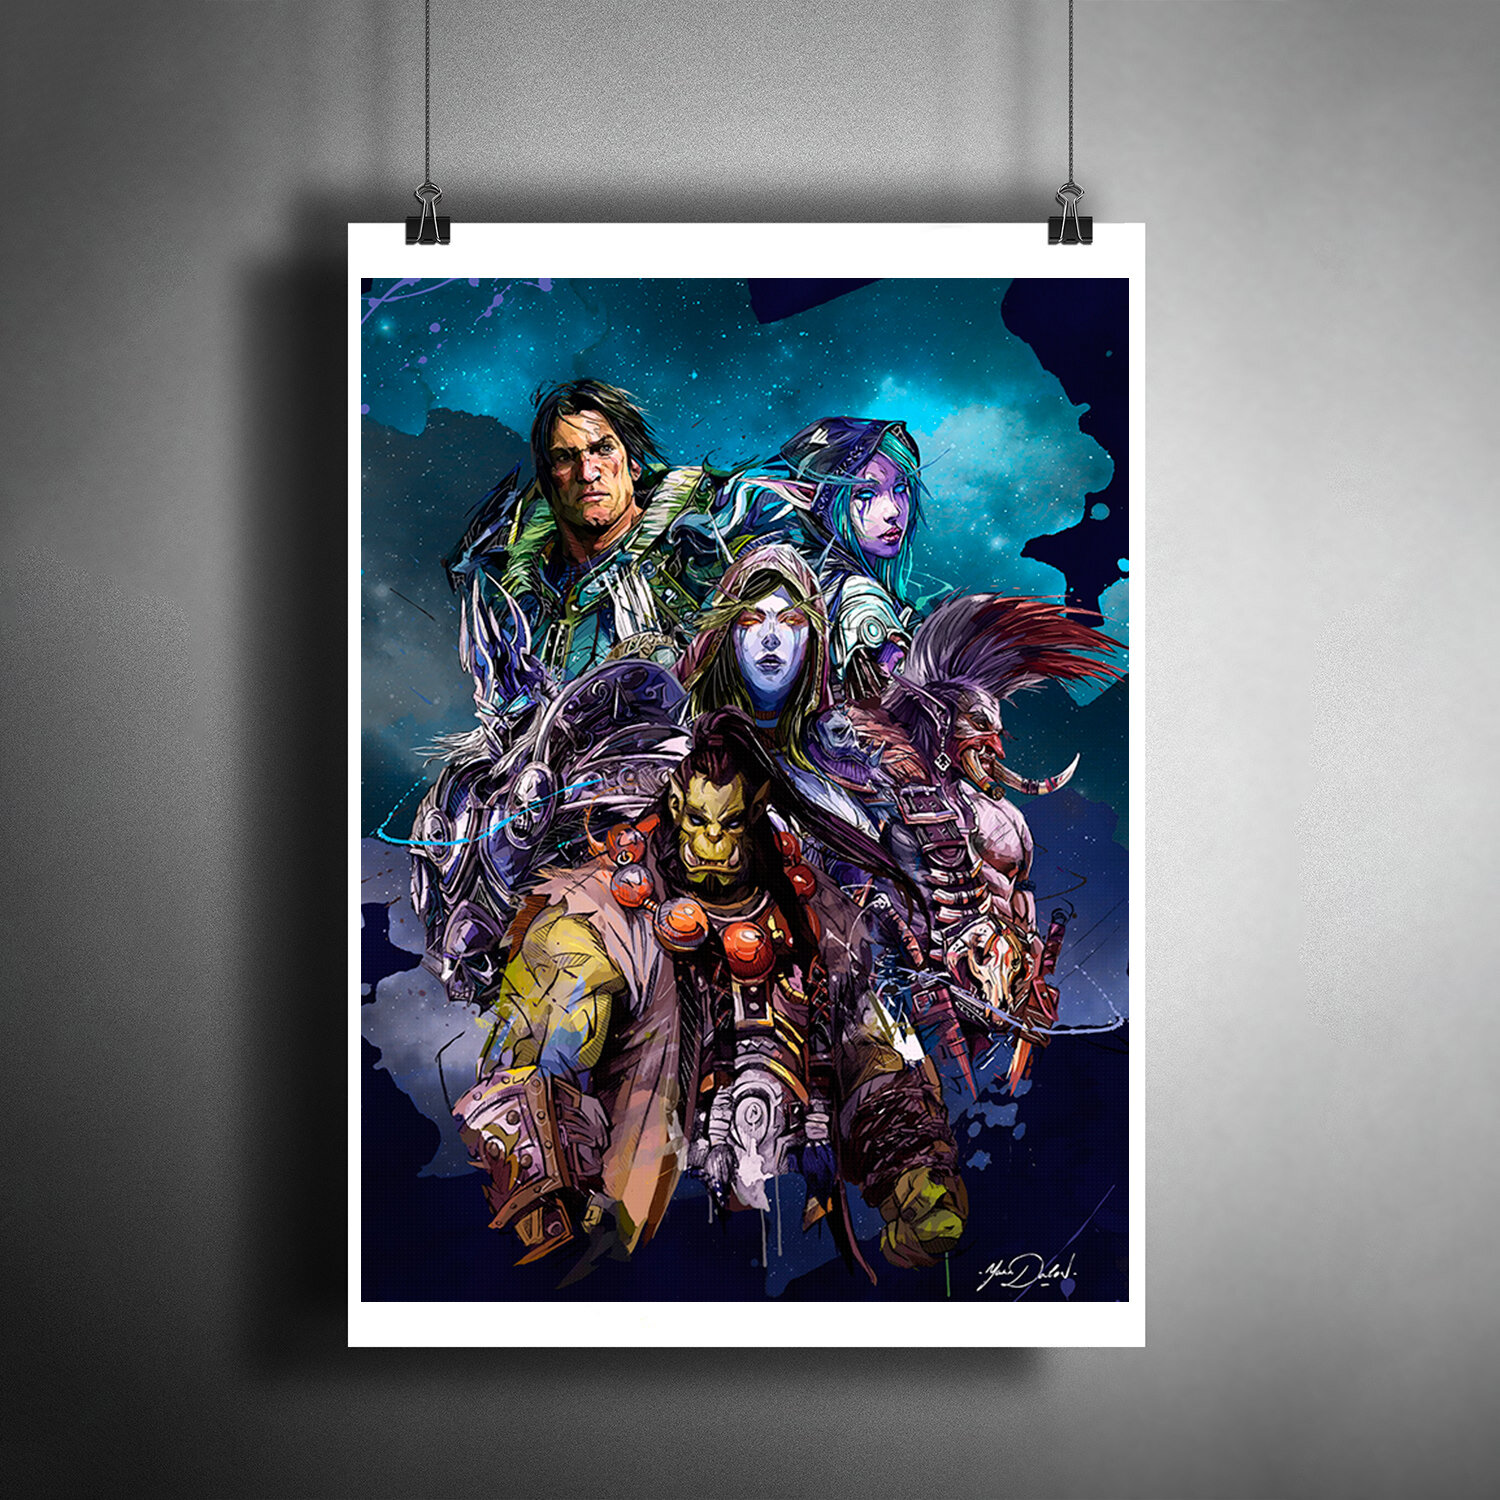 Постер плакат для интерьера Игра WOW. Герои World of Warcraft / Декор спальни гостинной. Подарок другу. A3 (297 x 420 мм)